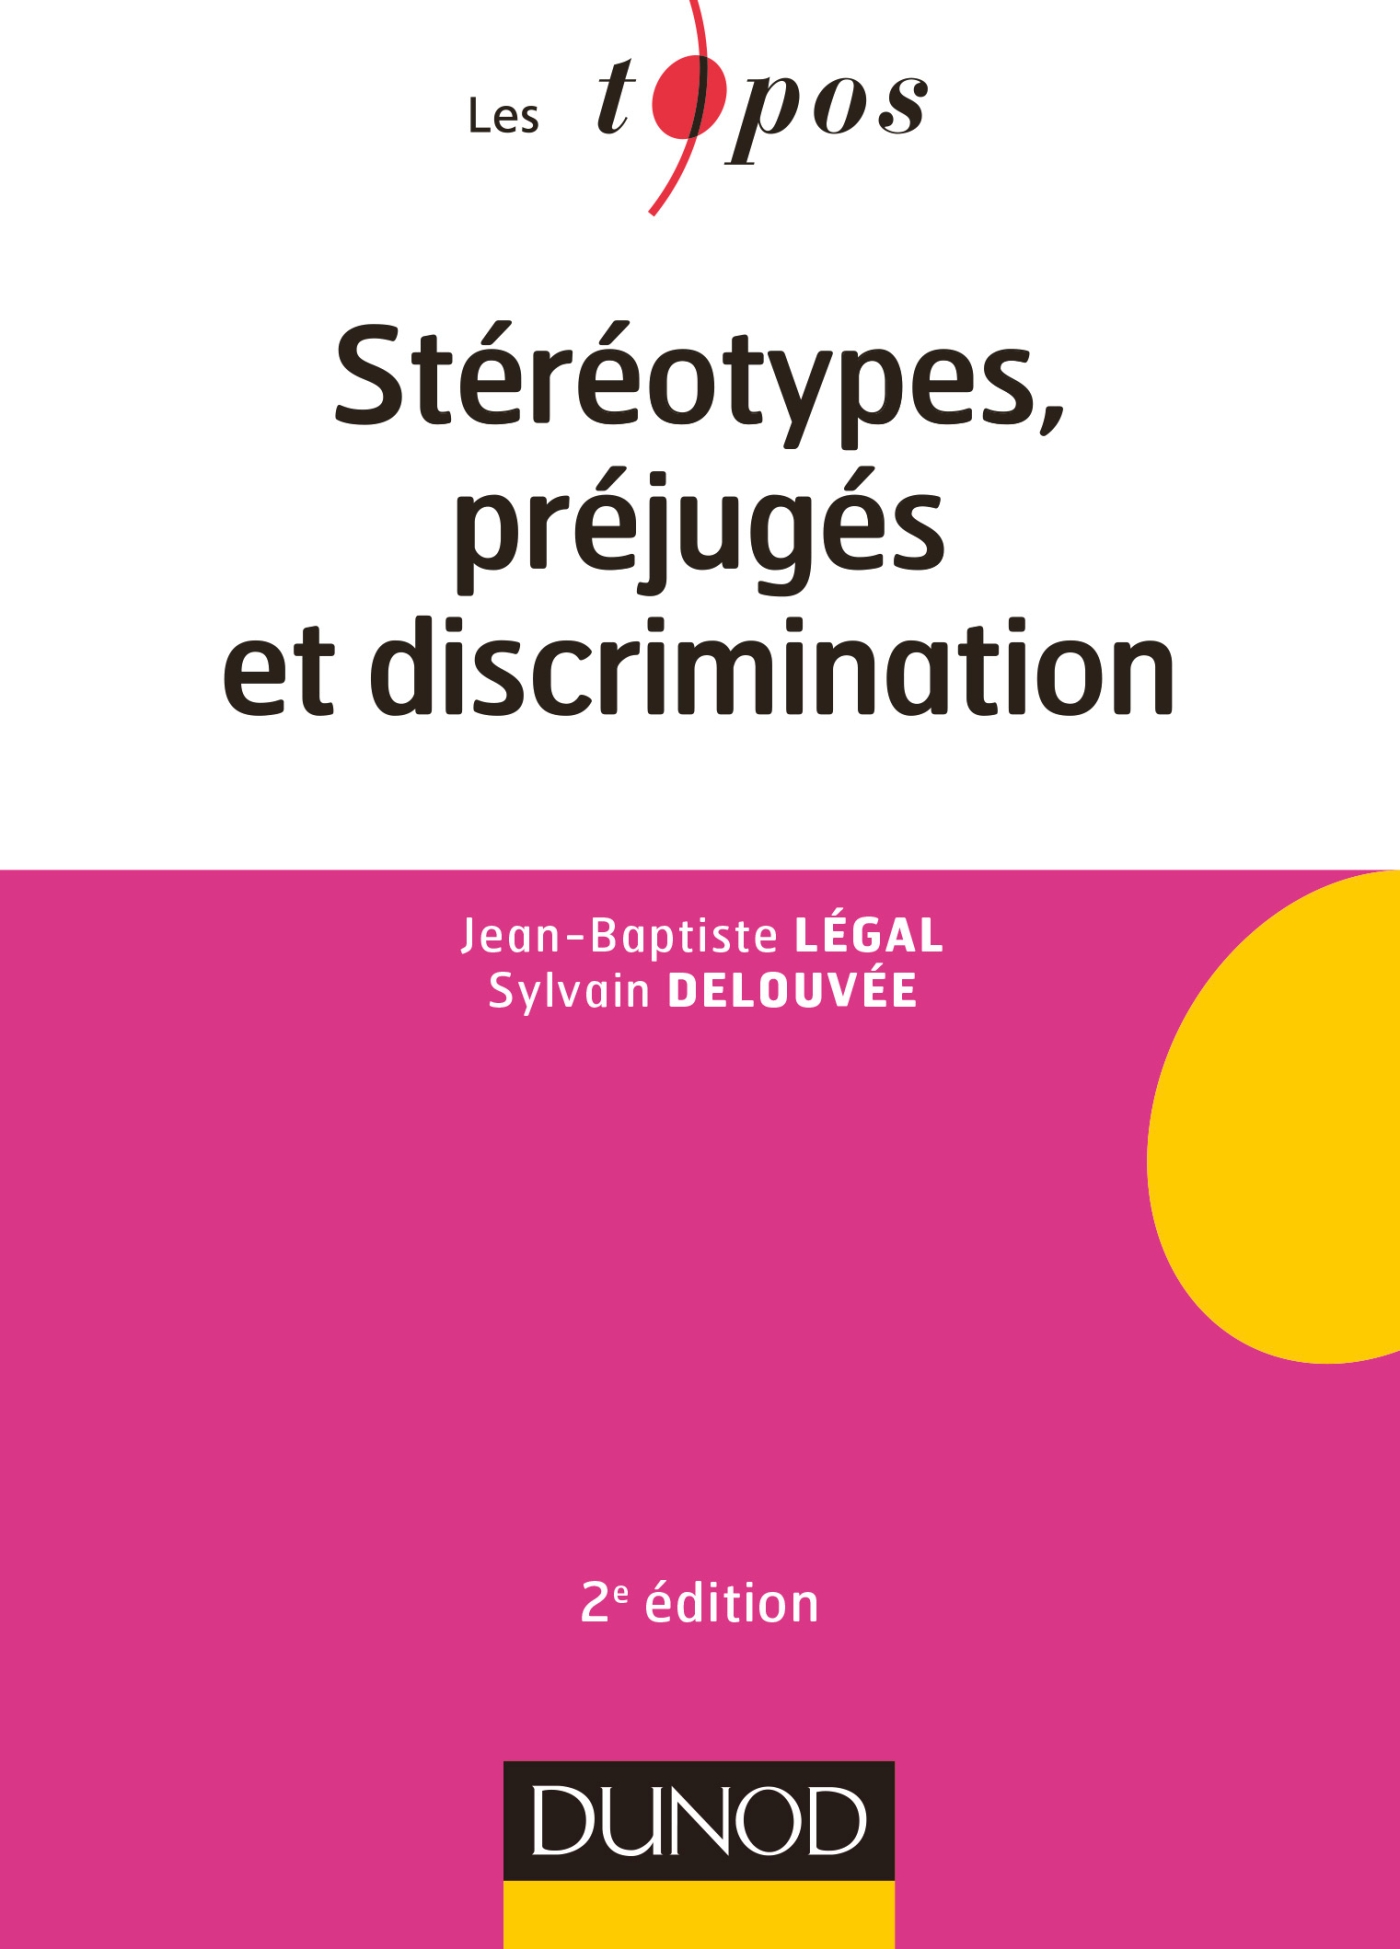 Stéréotypes, préjugés et discriminations